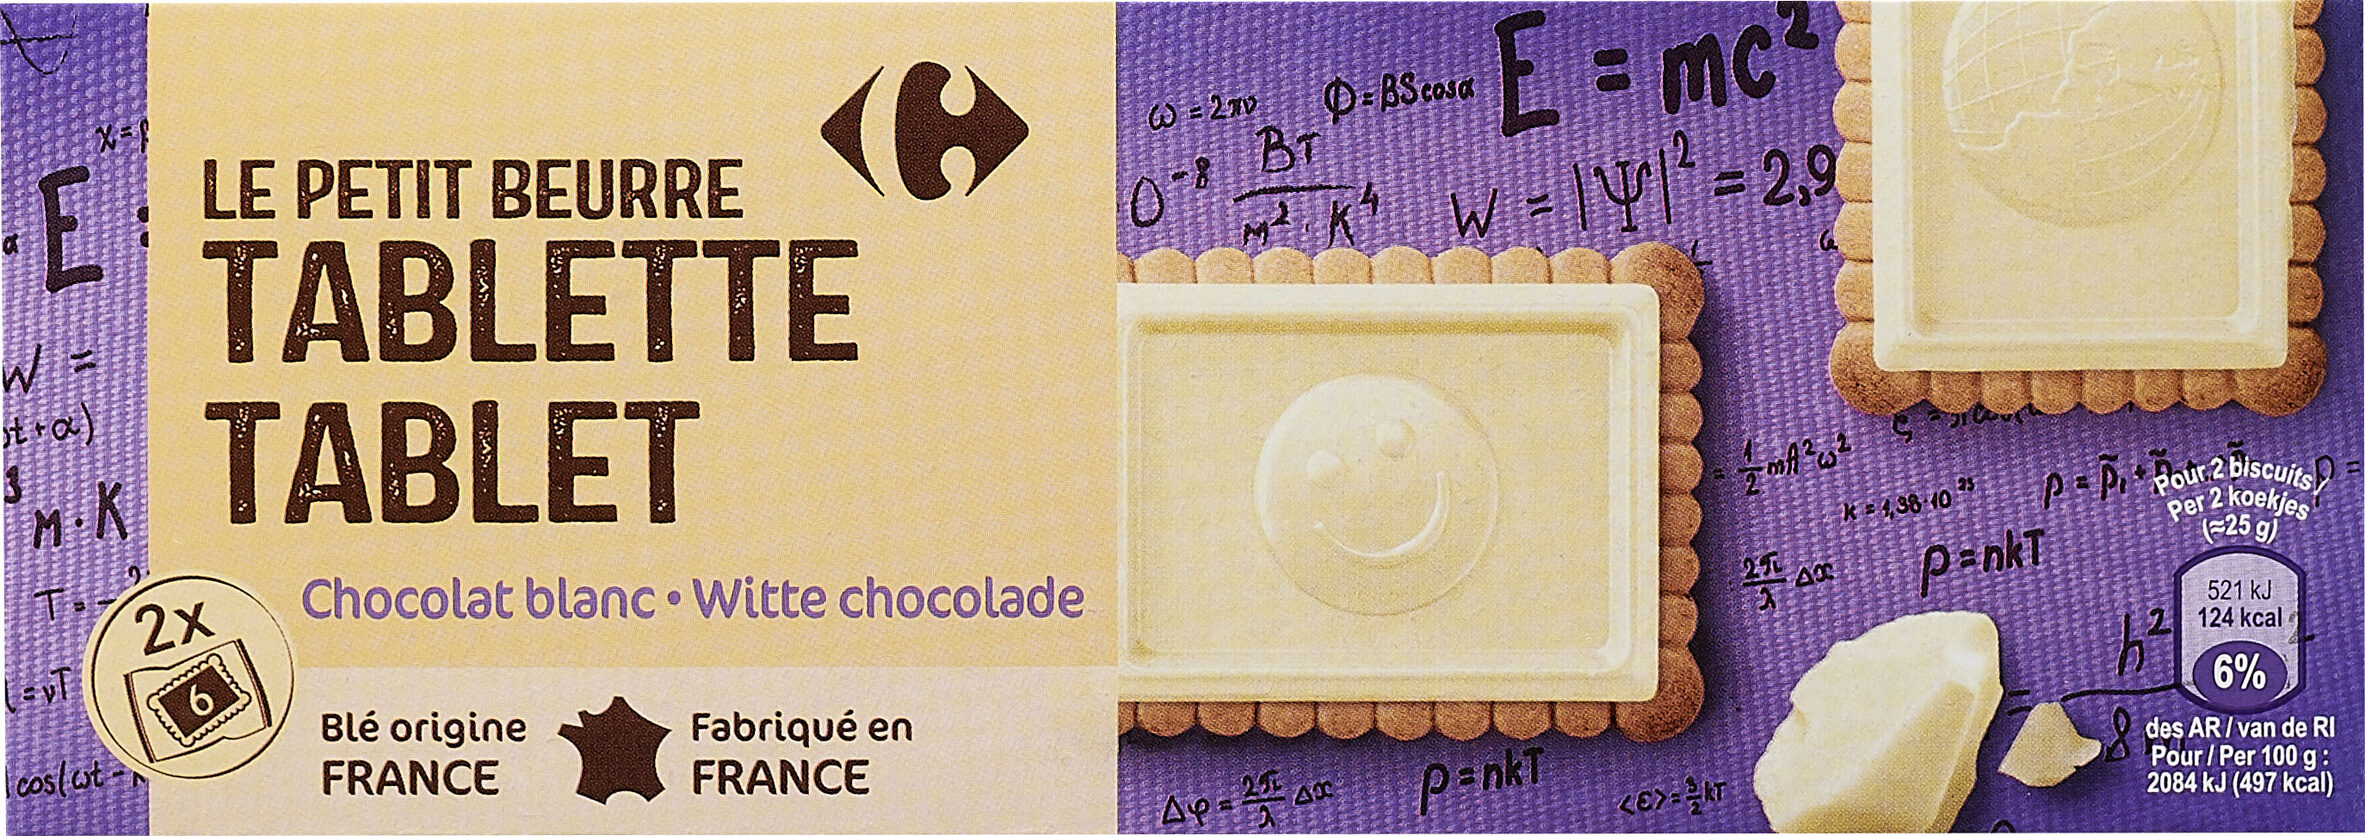 LE PETIT BEURRE TABLETTE Chocolat blanc - Produit